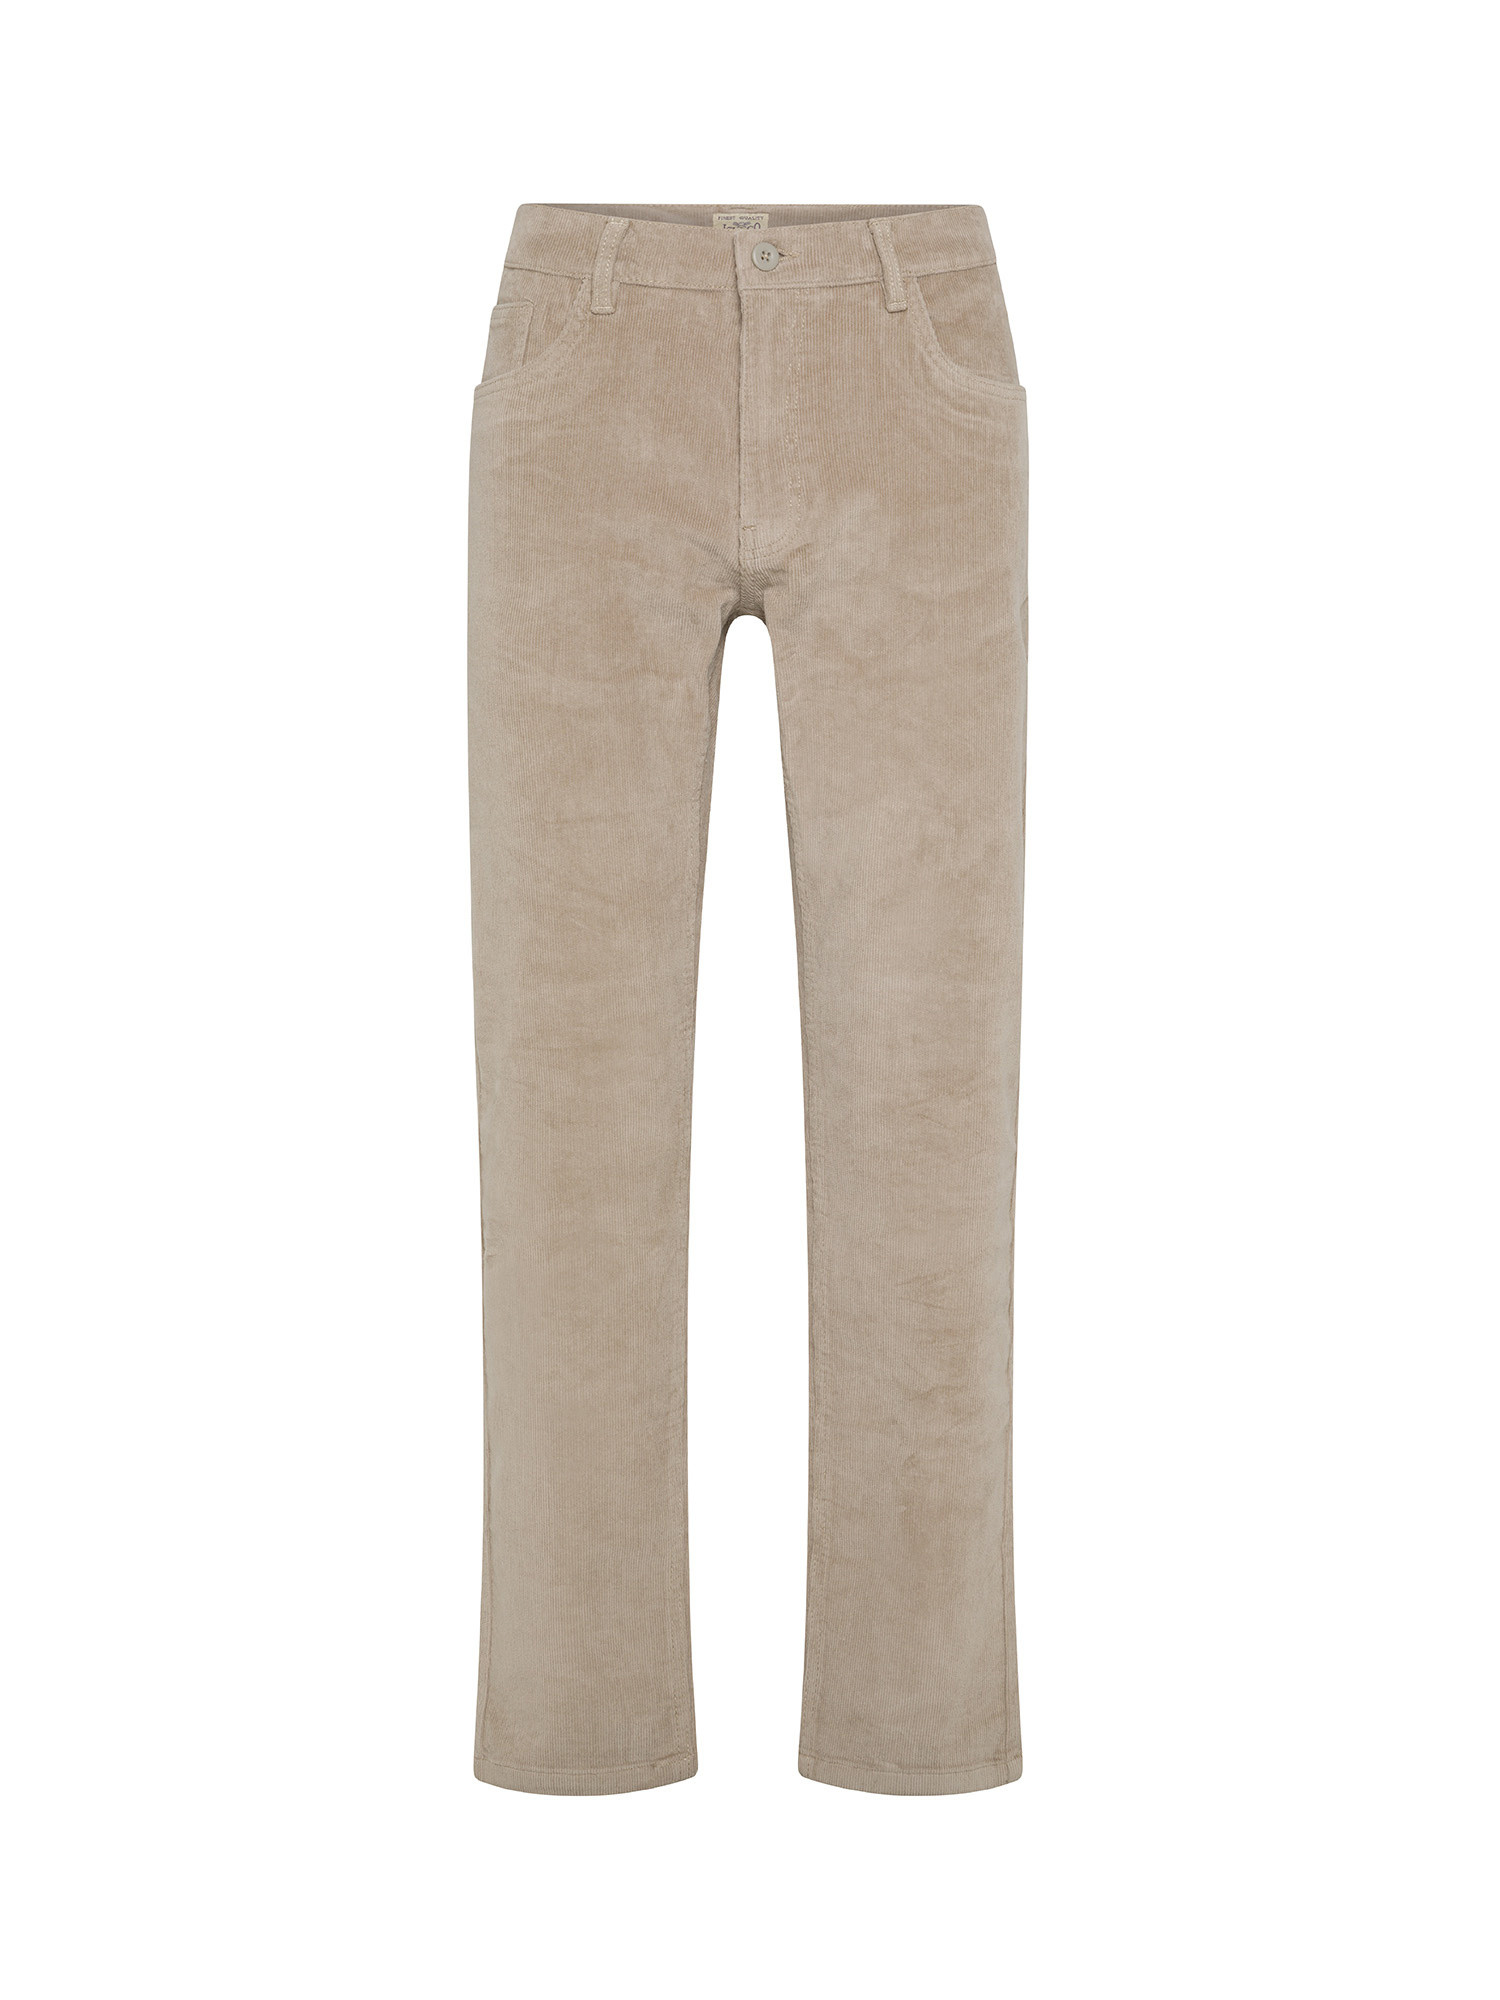 JCT - Pantaloni cinque tasche slim fit in velluto, Grigio tortora, large image number 0